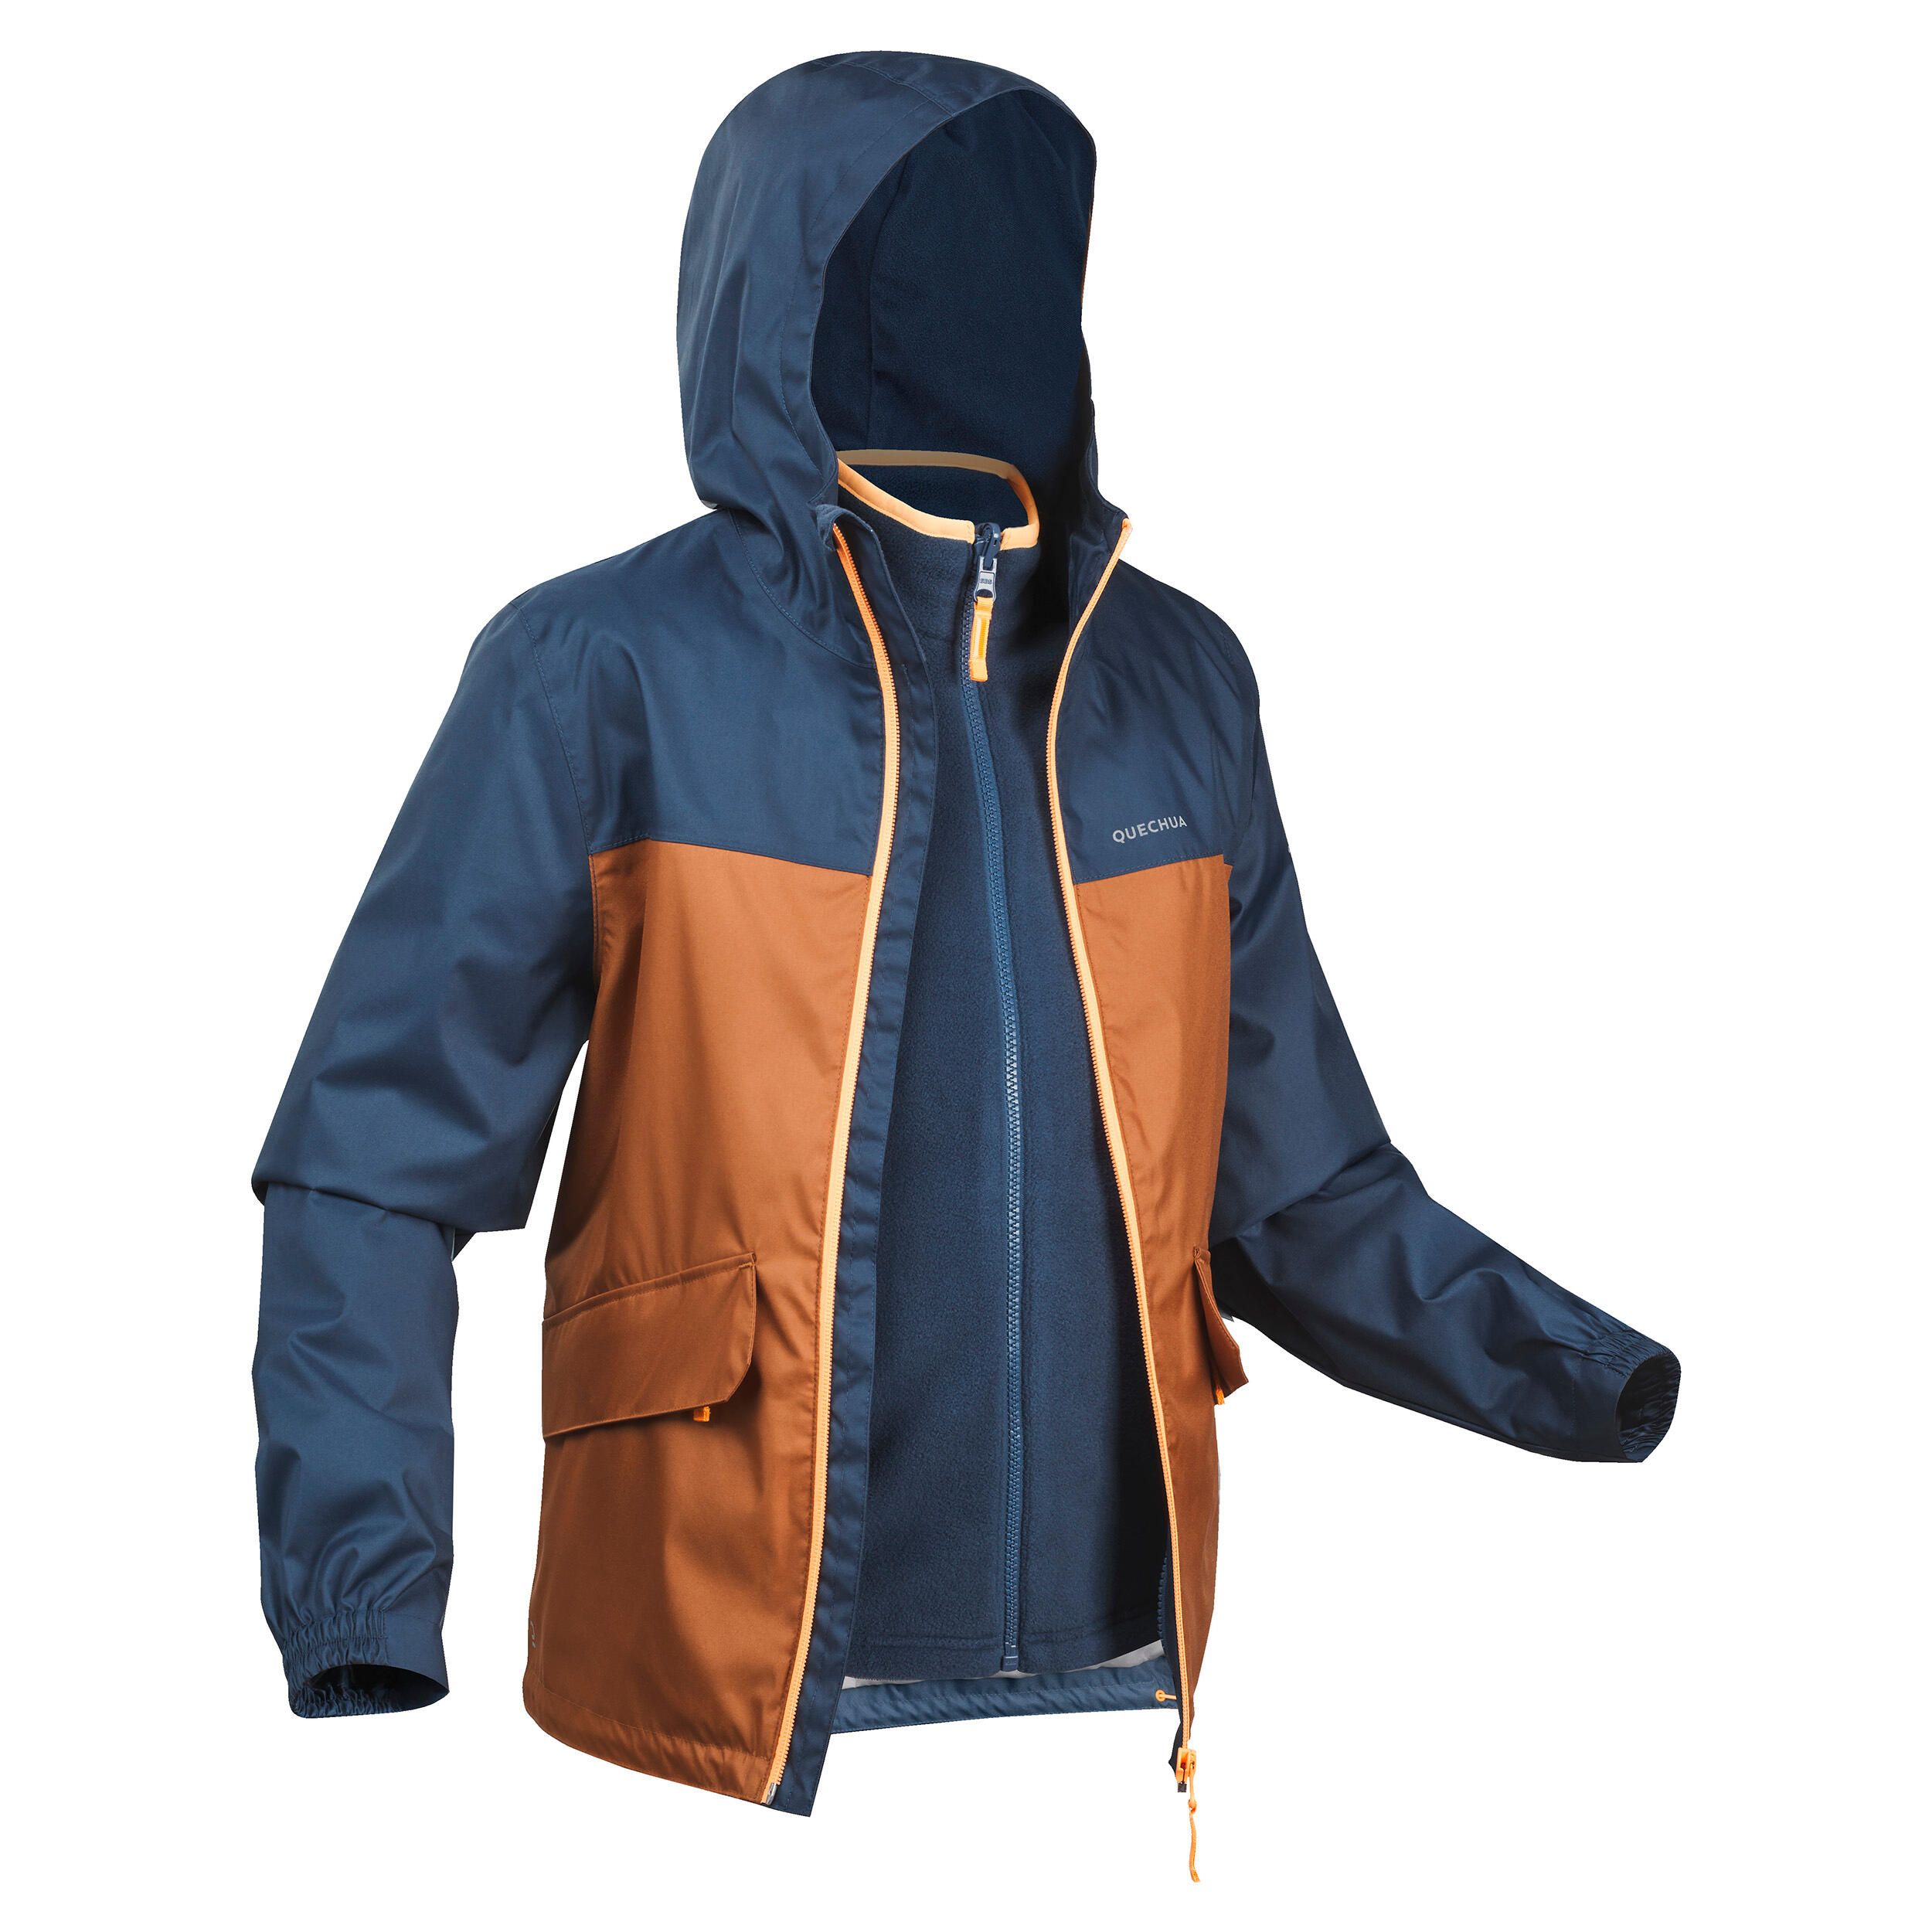 Непромокаемая куртка Stihl RAINTEC S 00008851148. Куртки warmangel мужские.